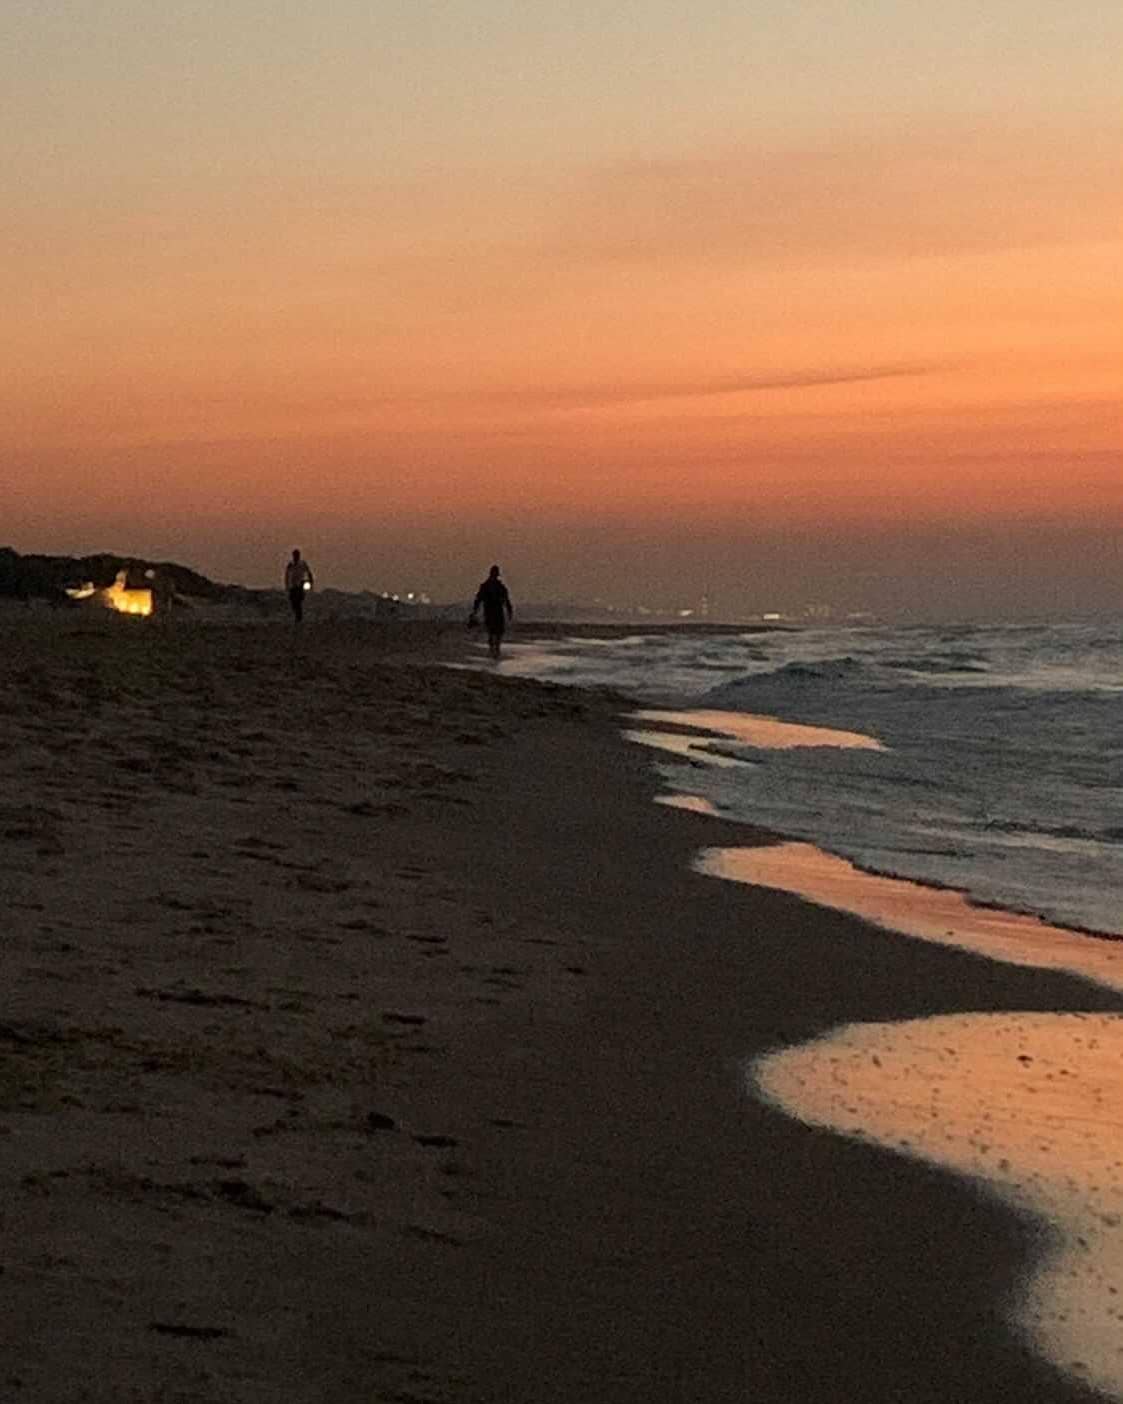 שקיעה בחוף י"א צילום מורייל 